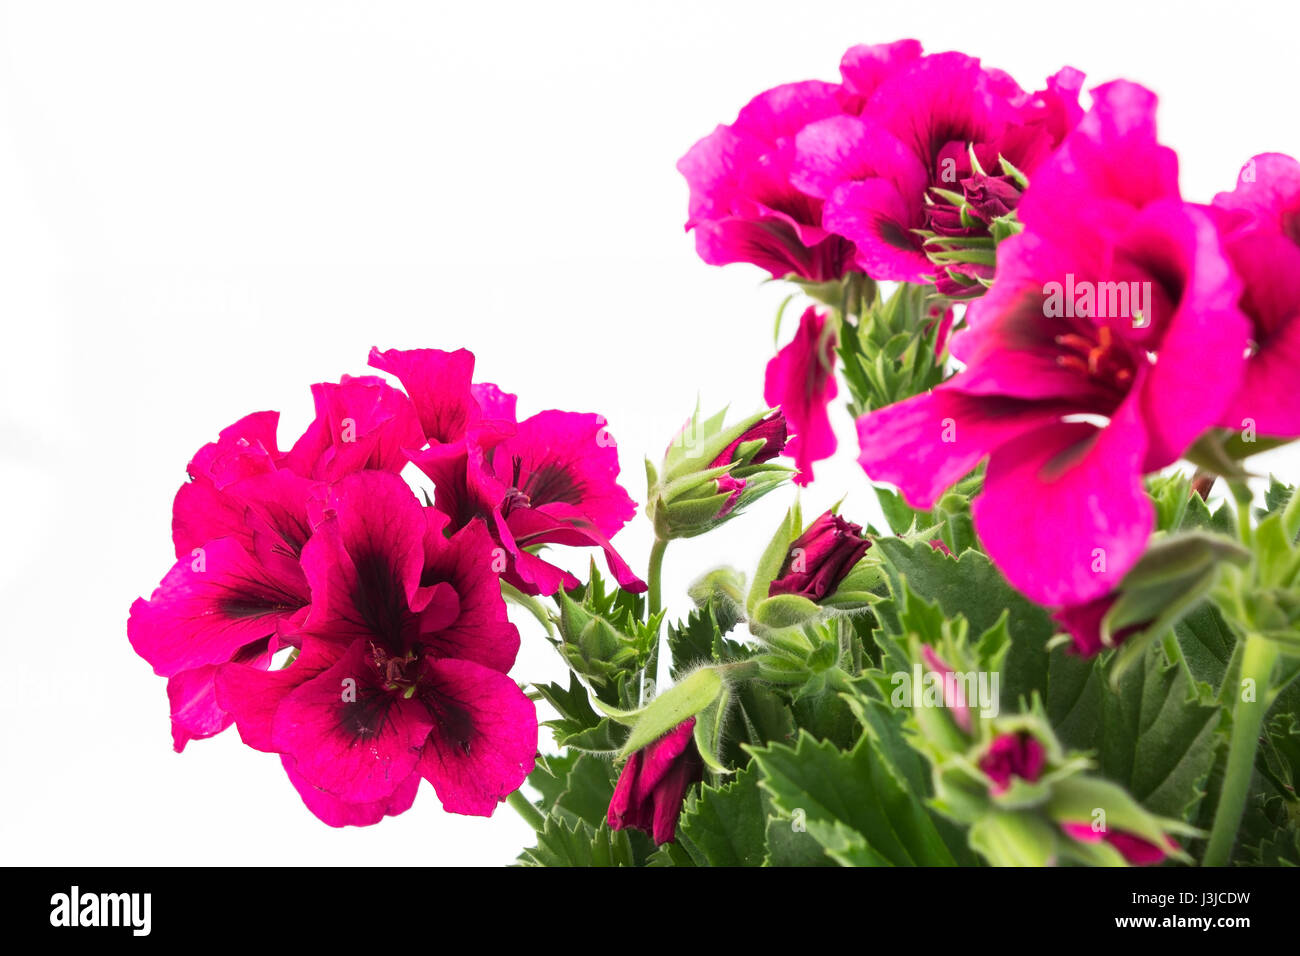 Pink England Geranium Close Up. Stock Photo